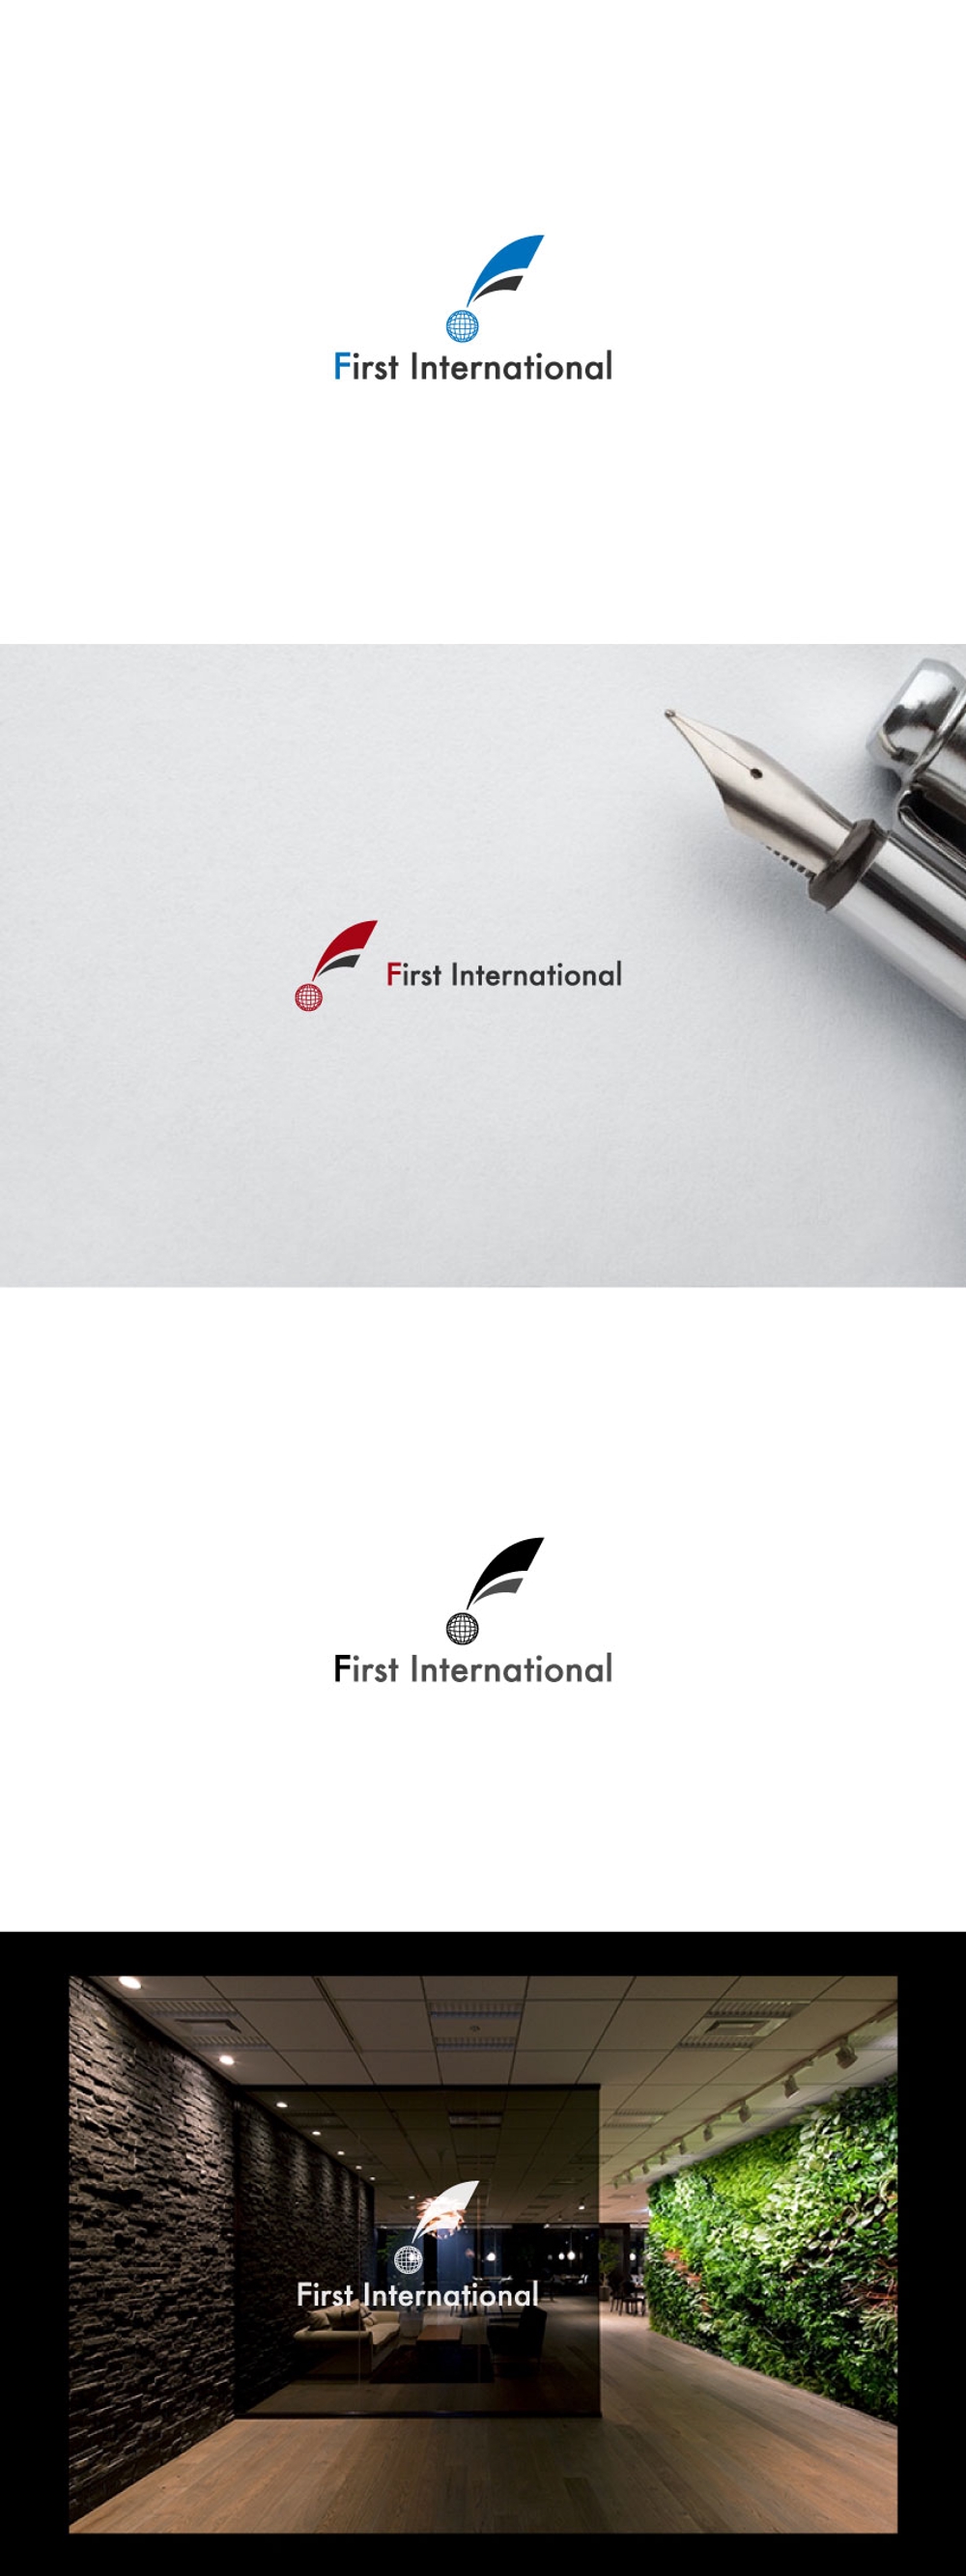 貿易商社「株式会社ファーストインターナショナル」のロゴ